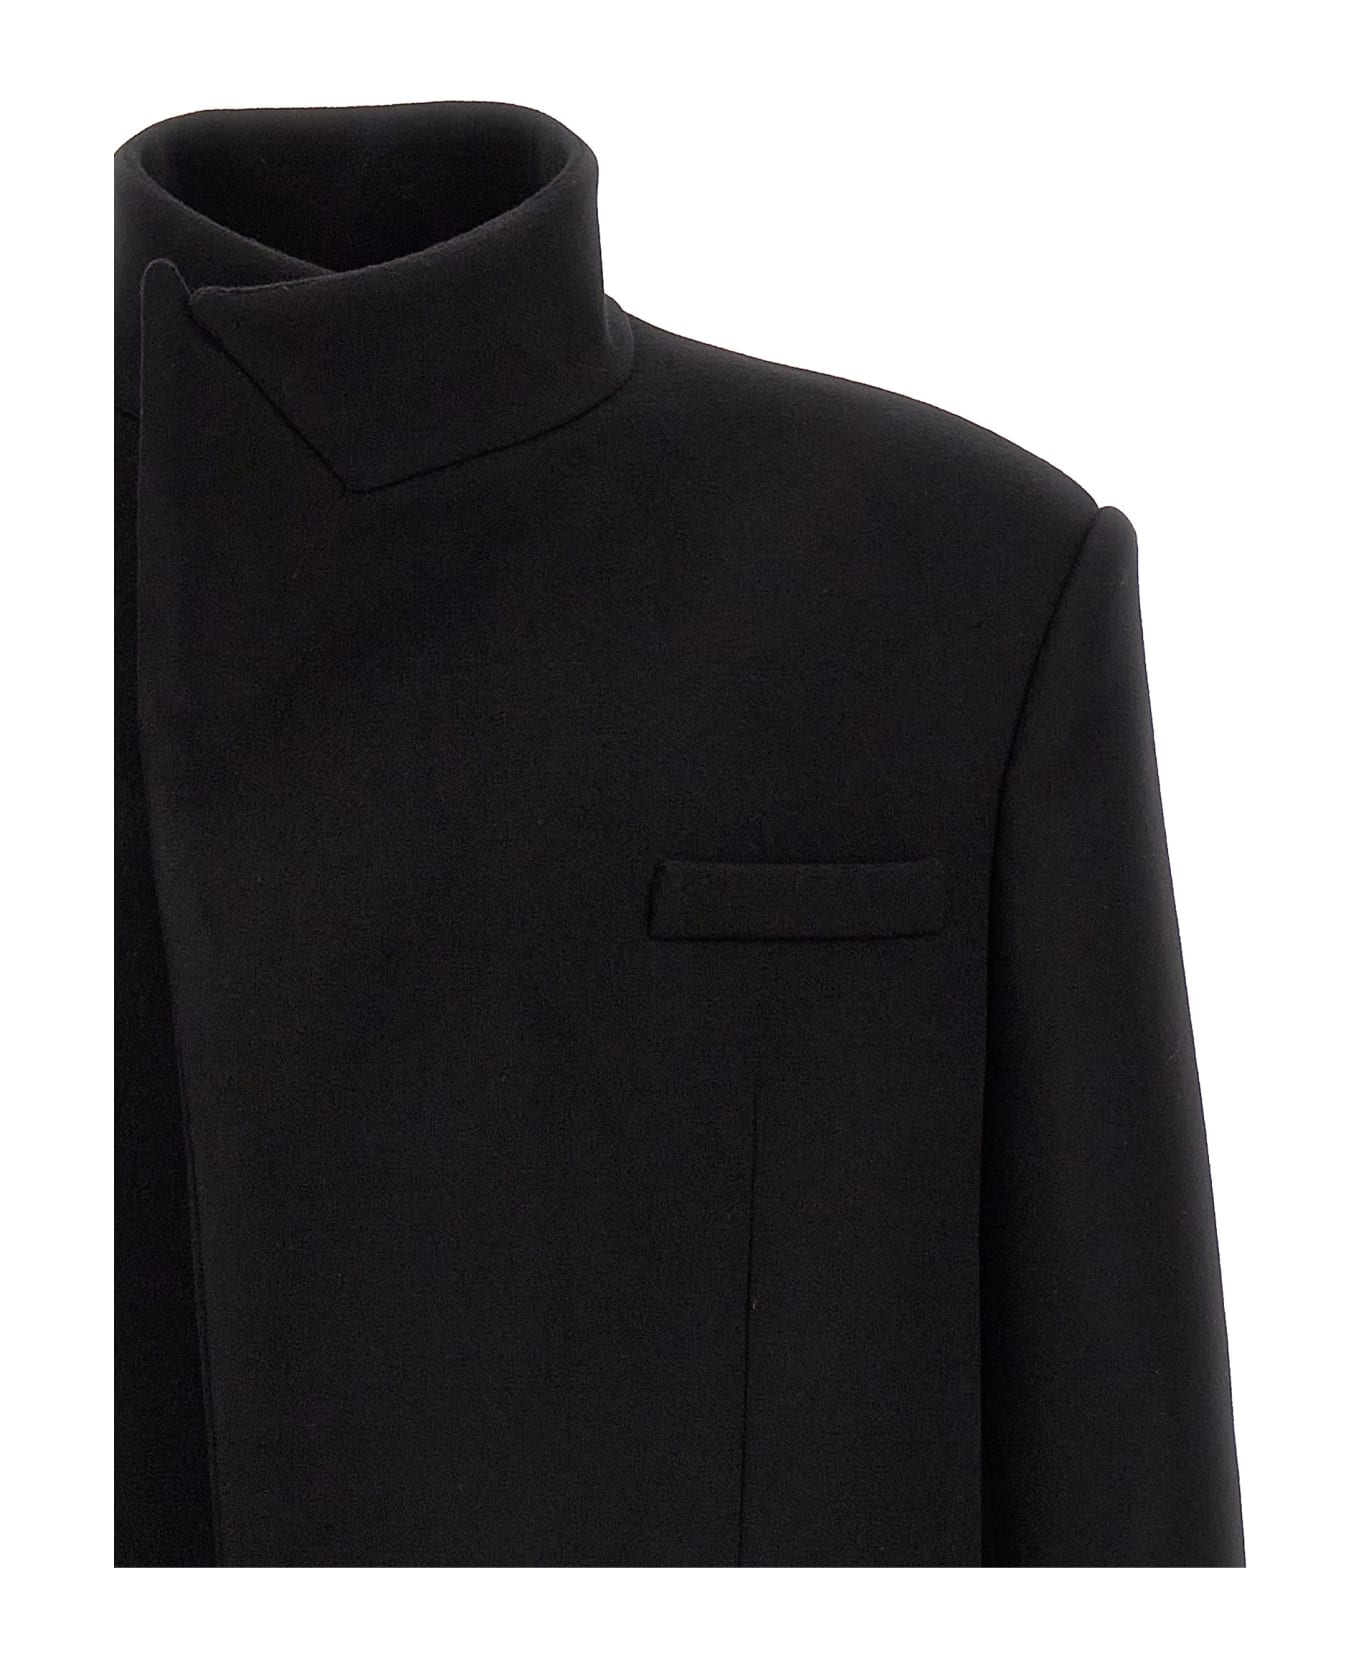 Balmain Single-breasted Long Coat - Black コート